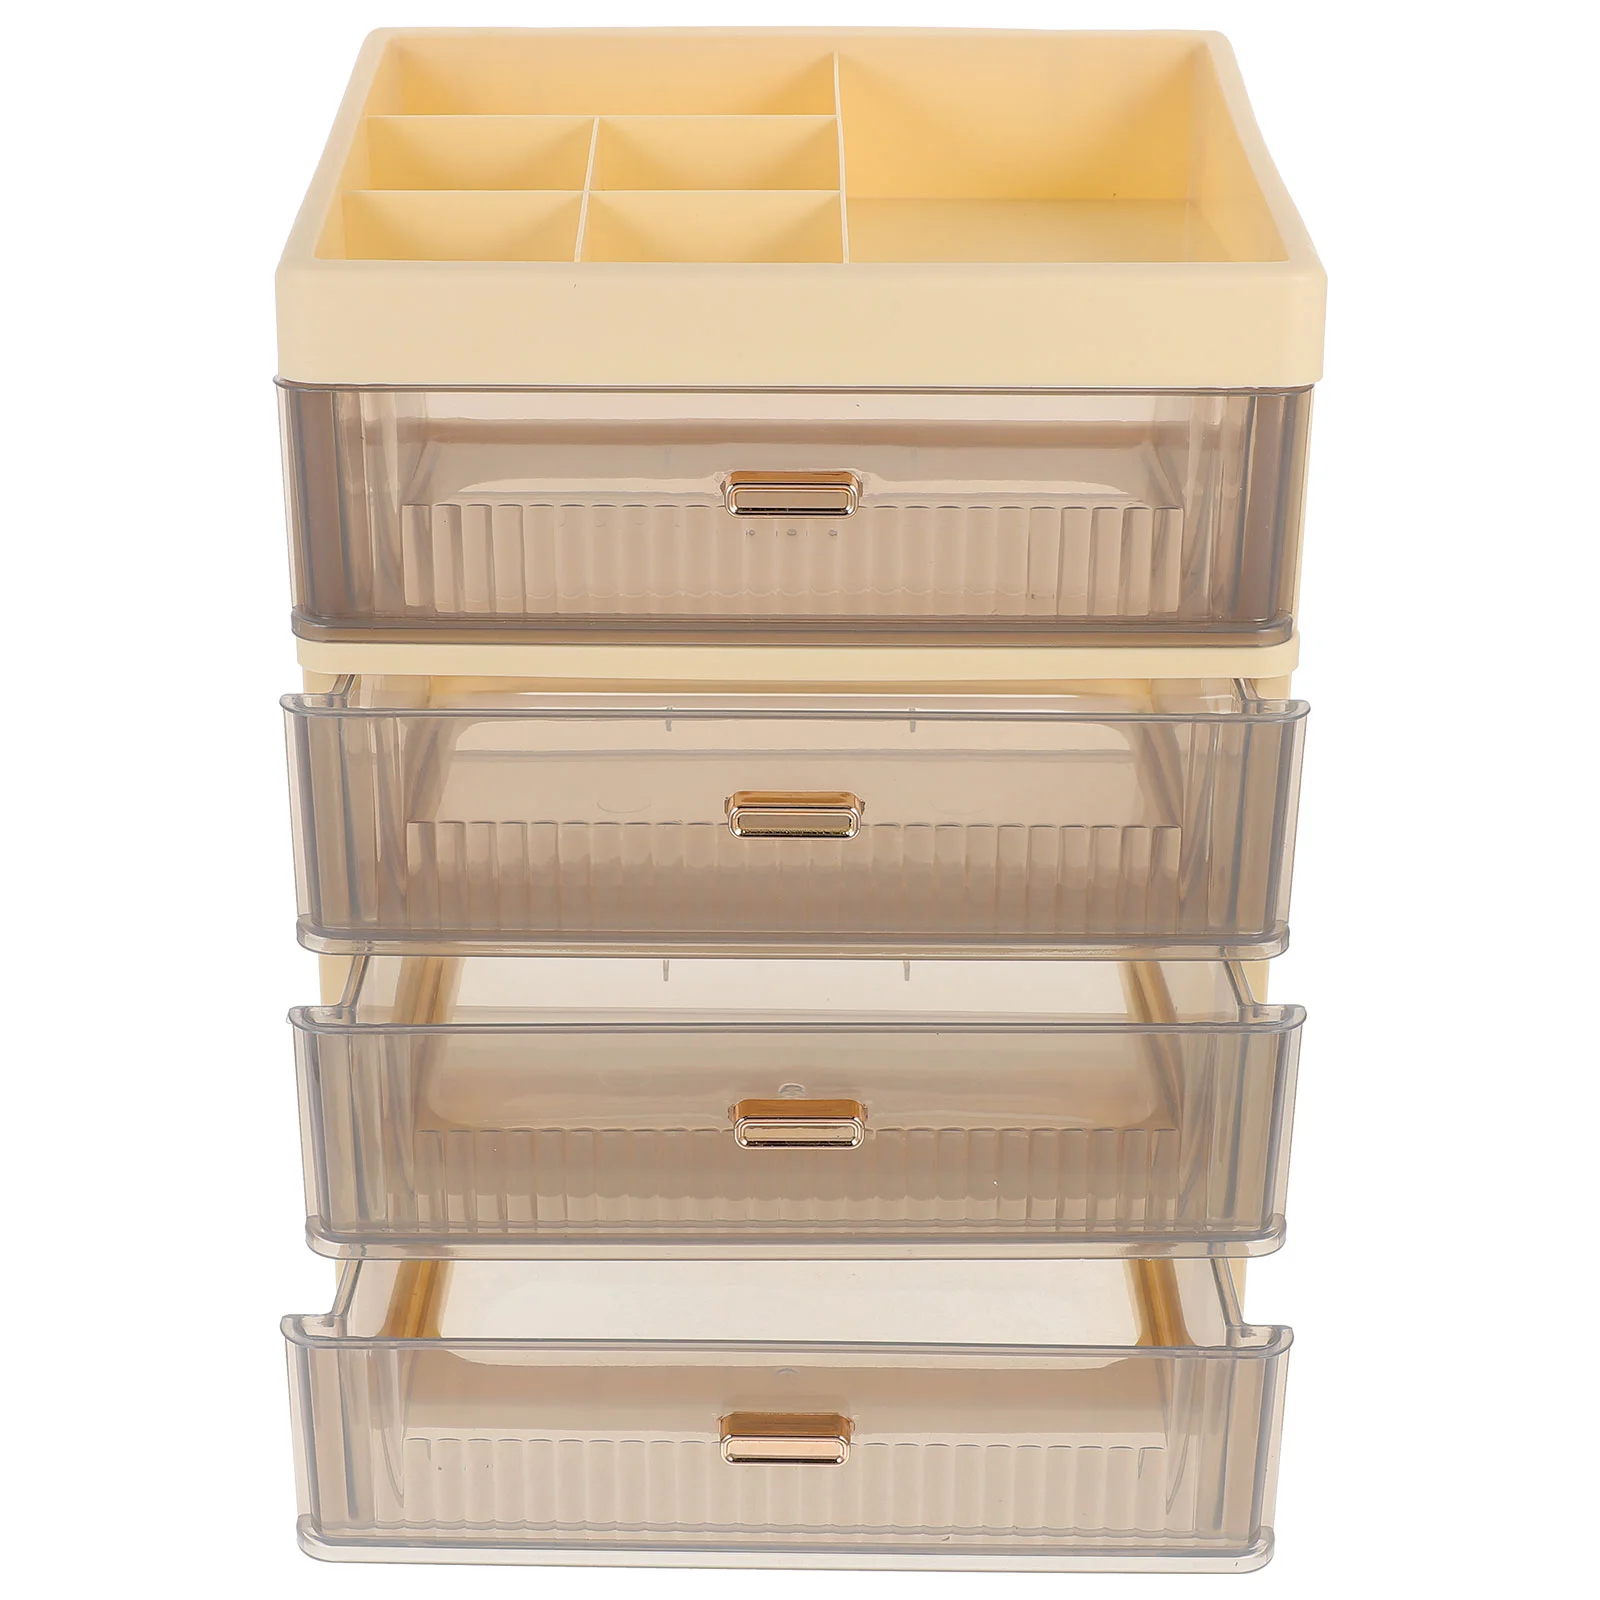 

Ящик для хранения канцелярских принадлежностей, настольный органайзер с несколькими ящиками для мелочей, столешница с ящиками для хранения